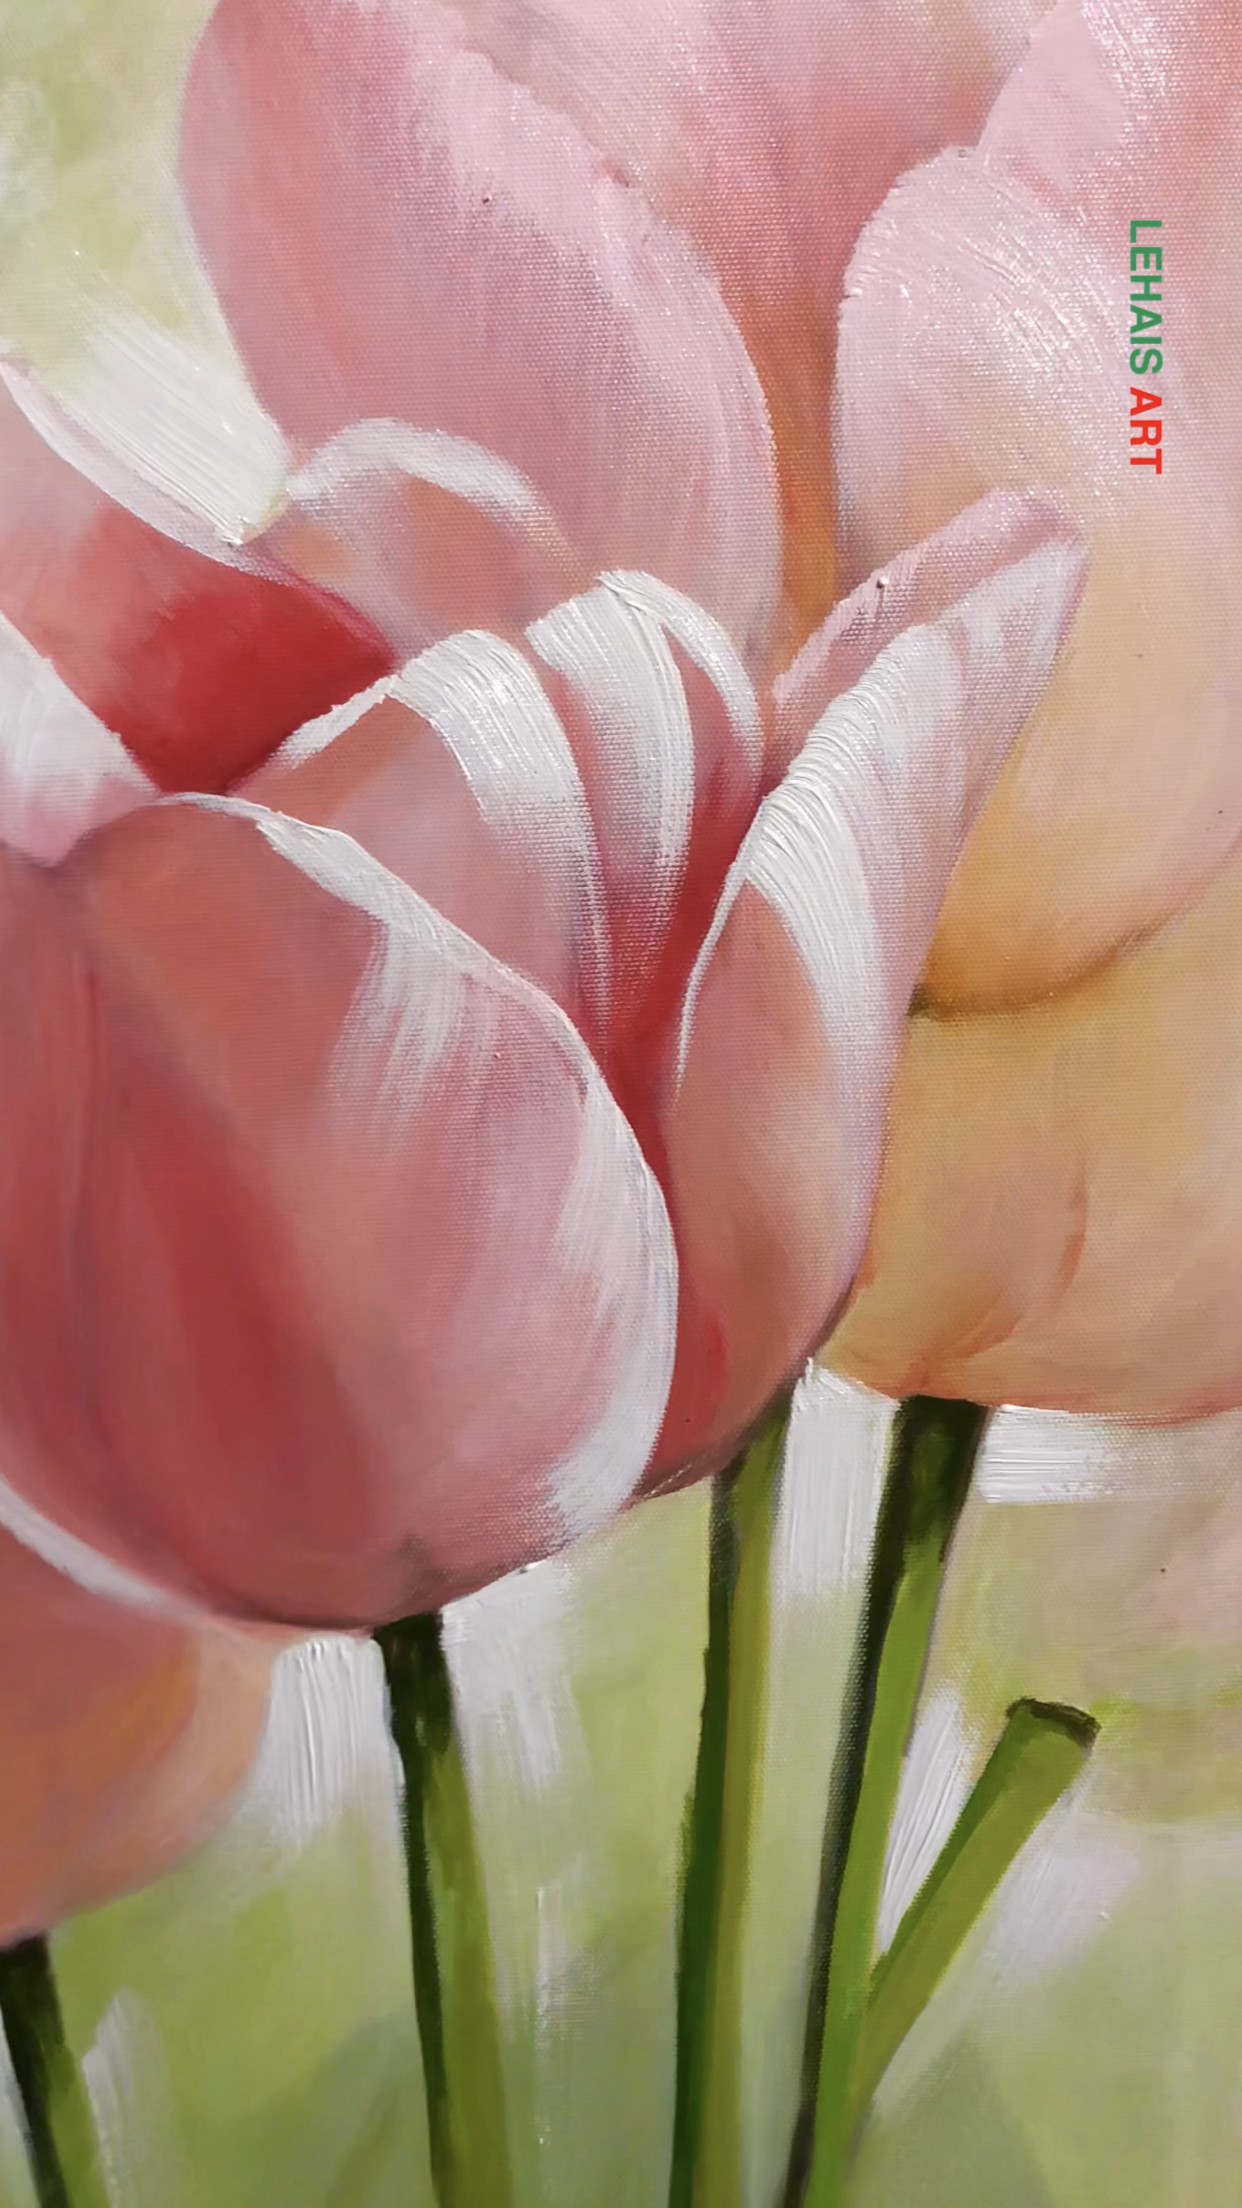 Tranh sơn dầu hoa Tulip được vẽ với màu sắc nhẹ nhàng và tình cảm